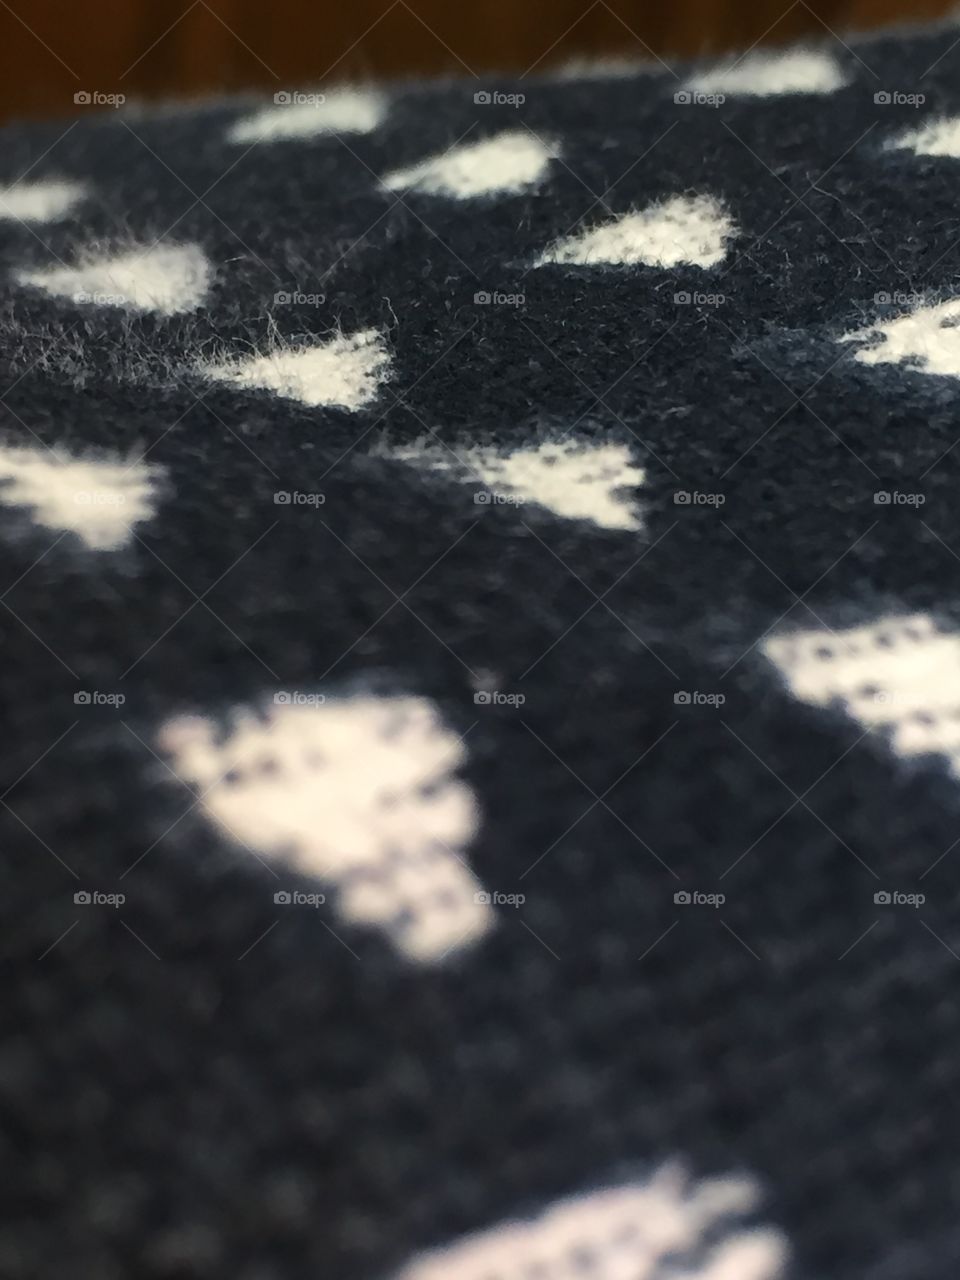 Extreme closeup fabric pattern